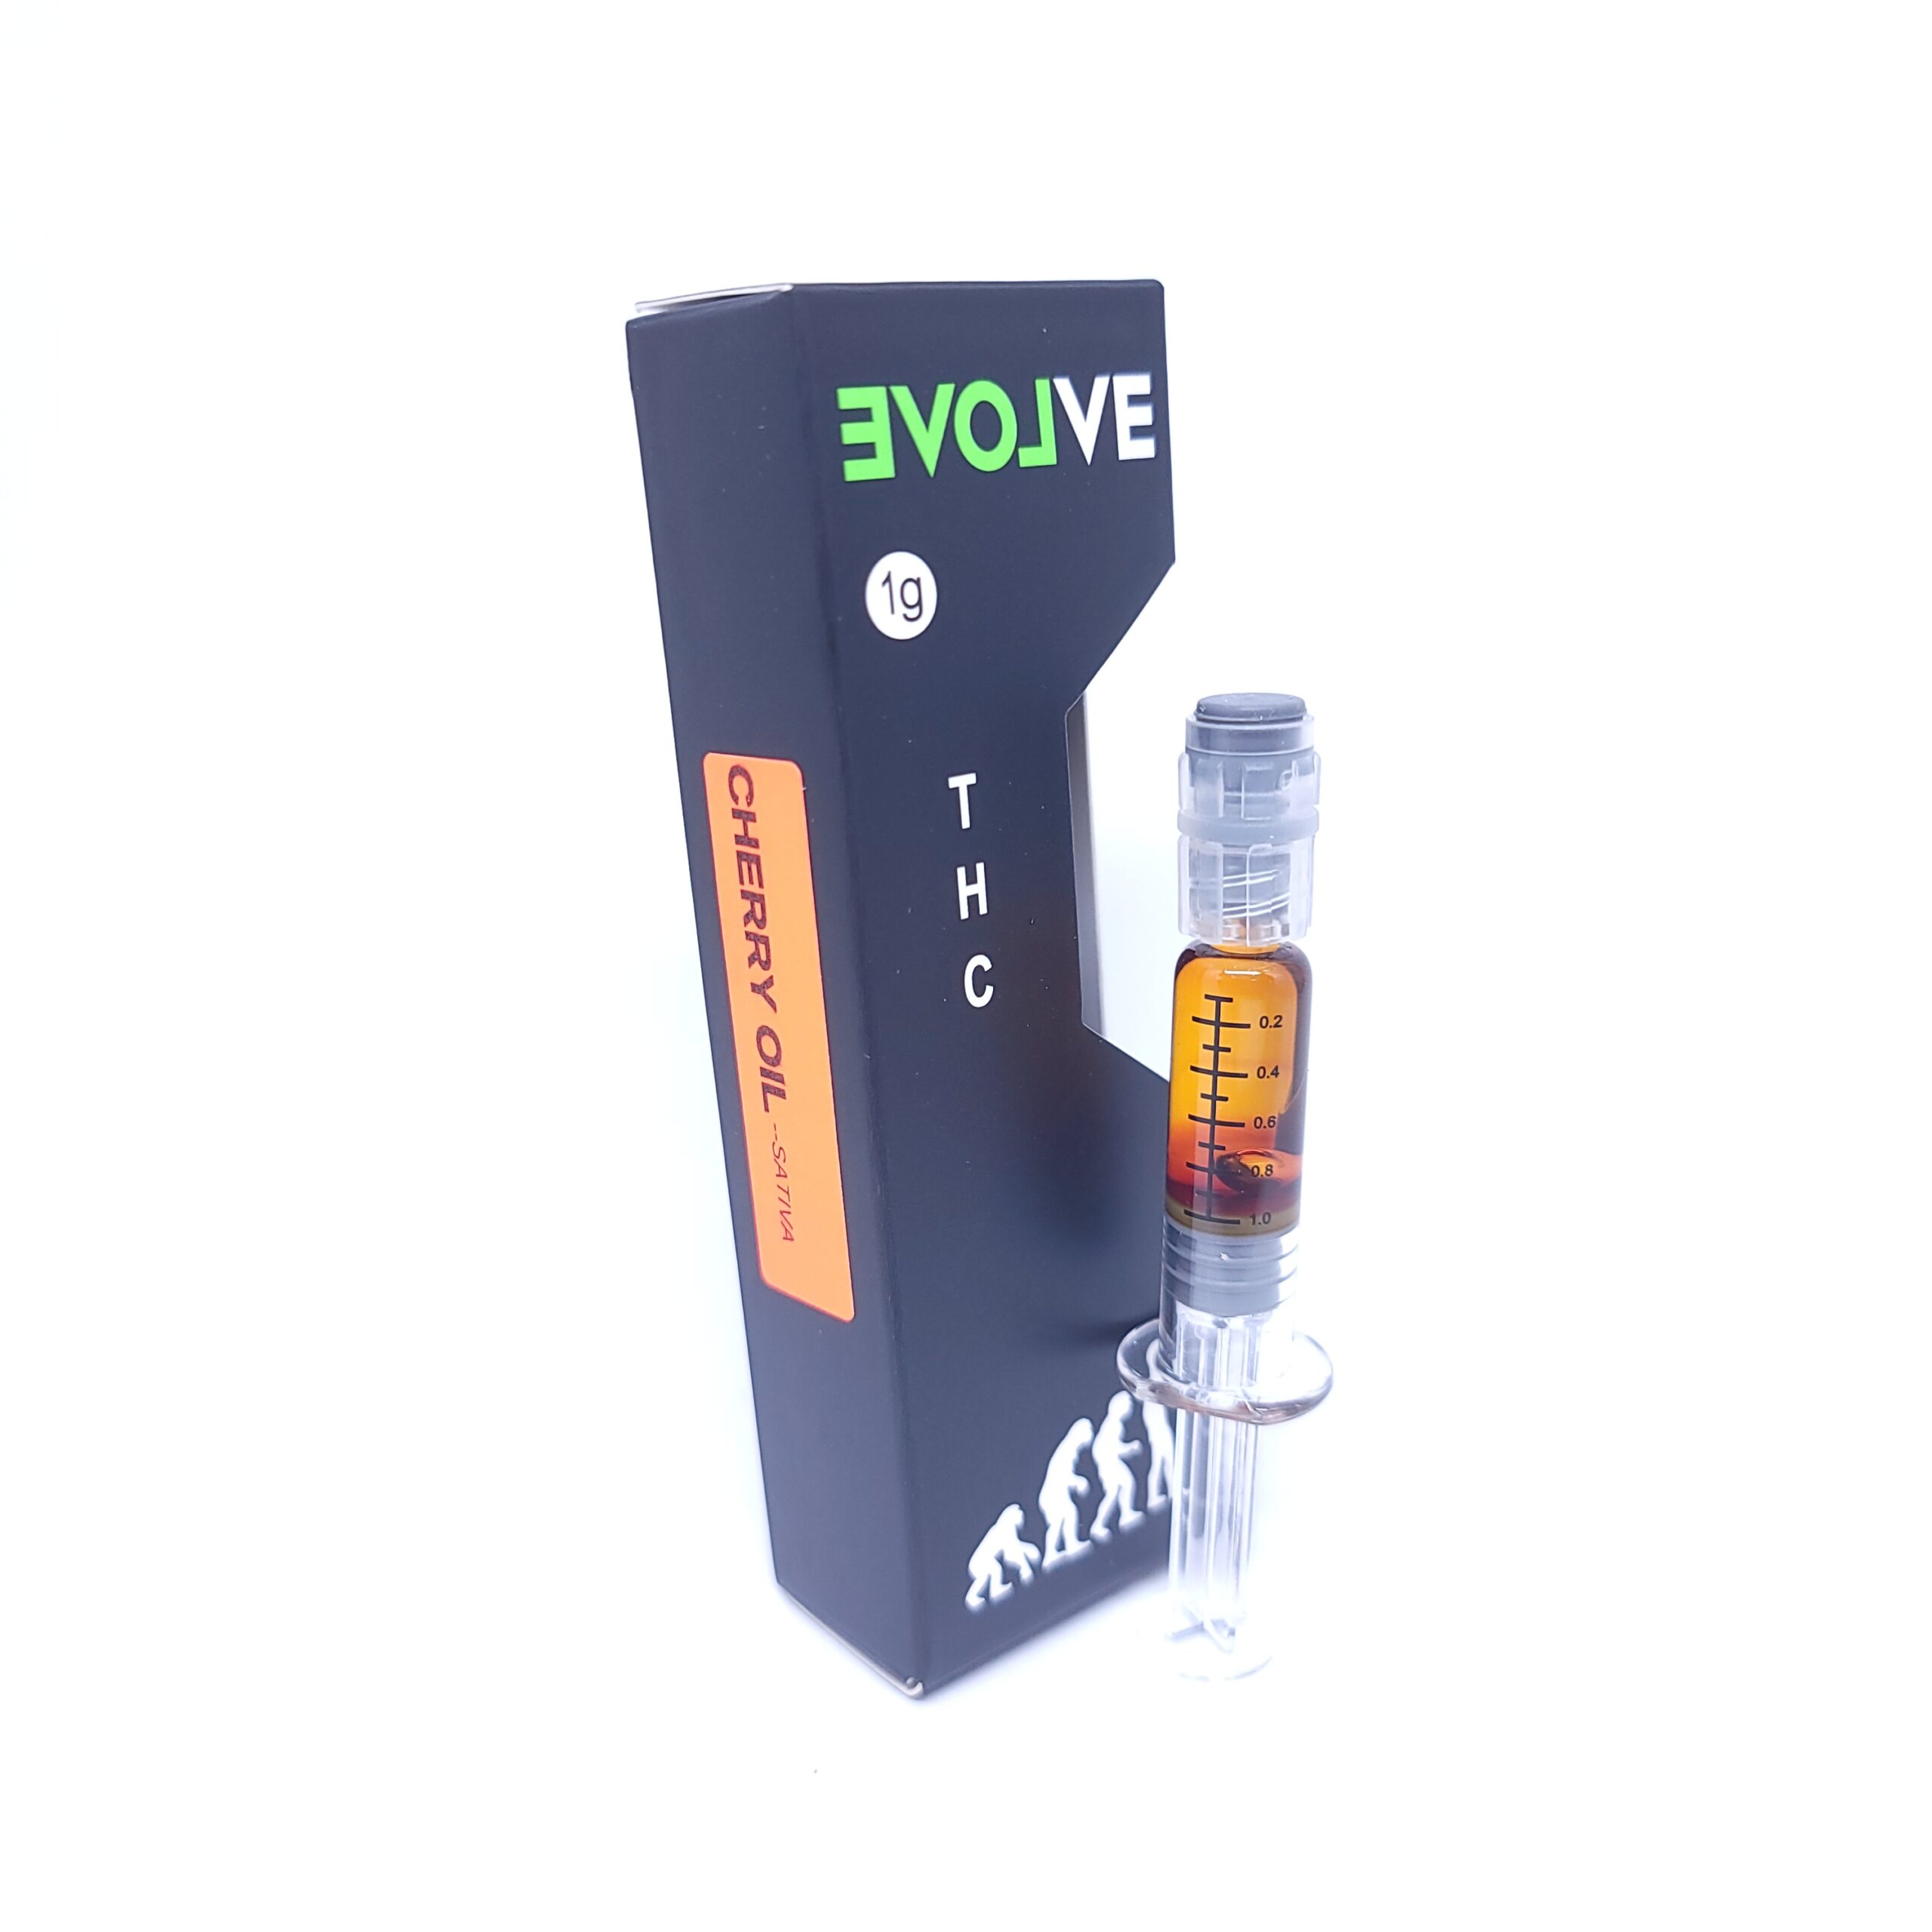 Evolve - Premium Cherry Oil UK - Sativa 1ml